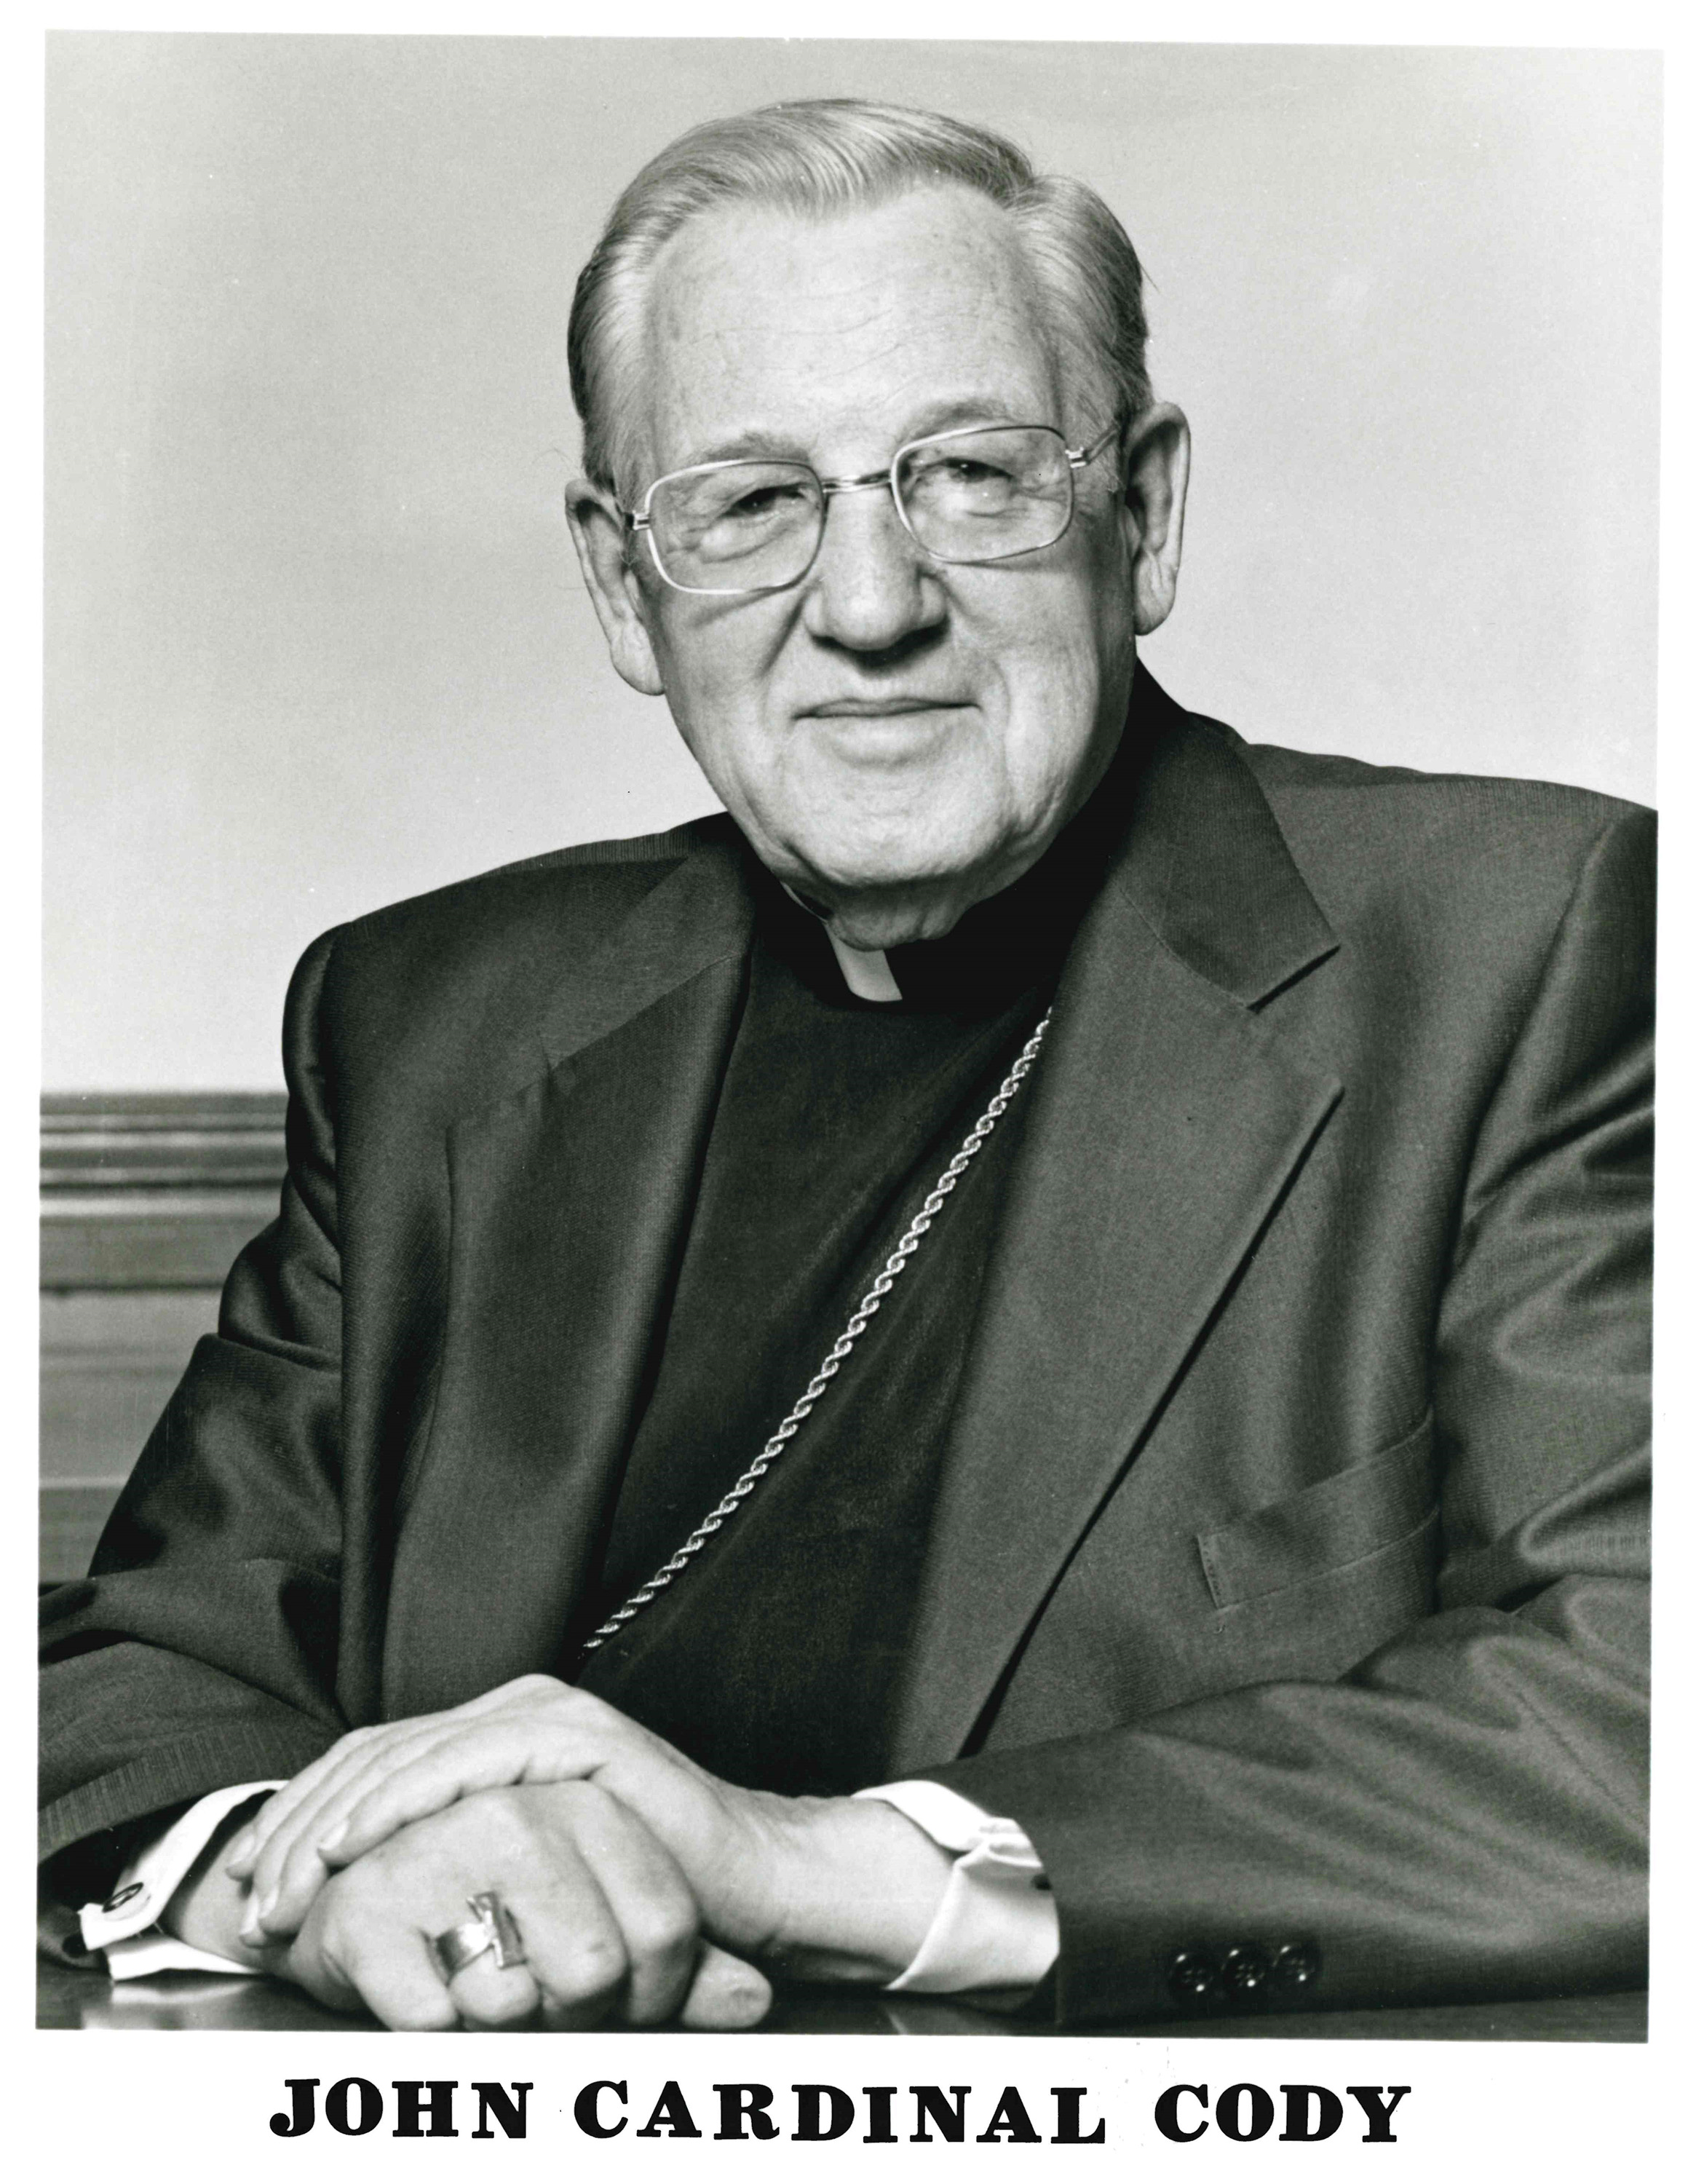 John Cardinal Cody